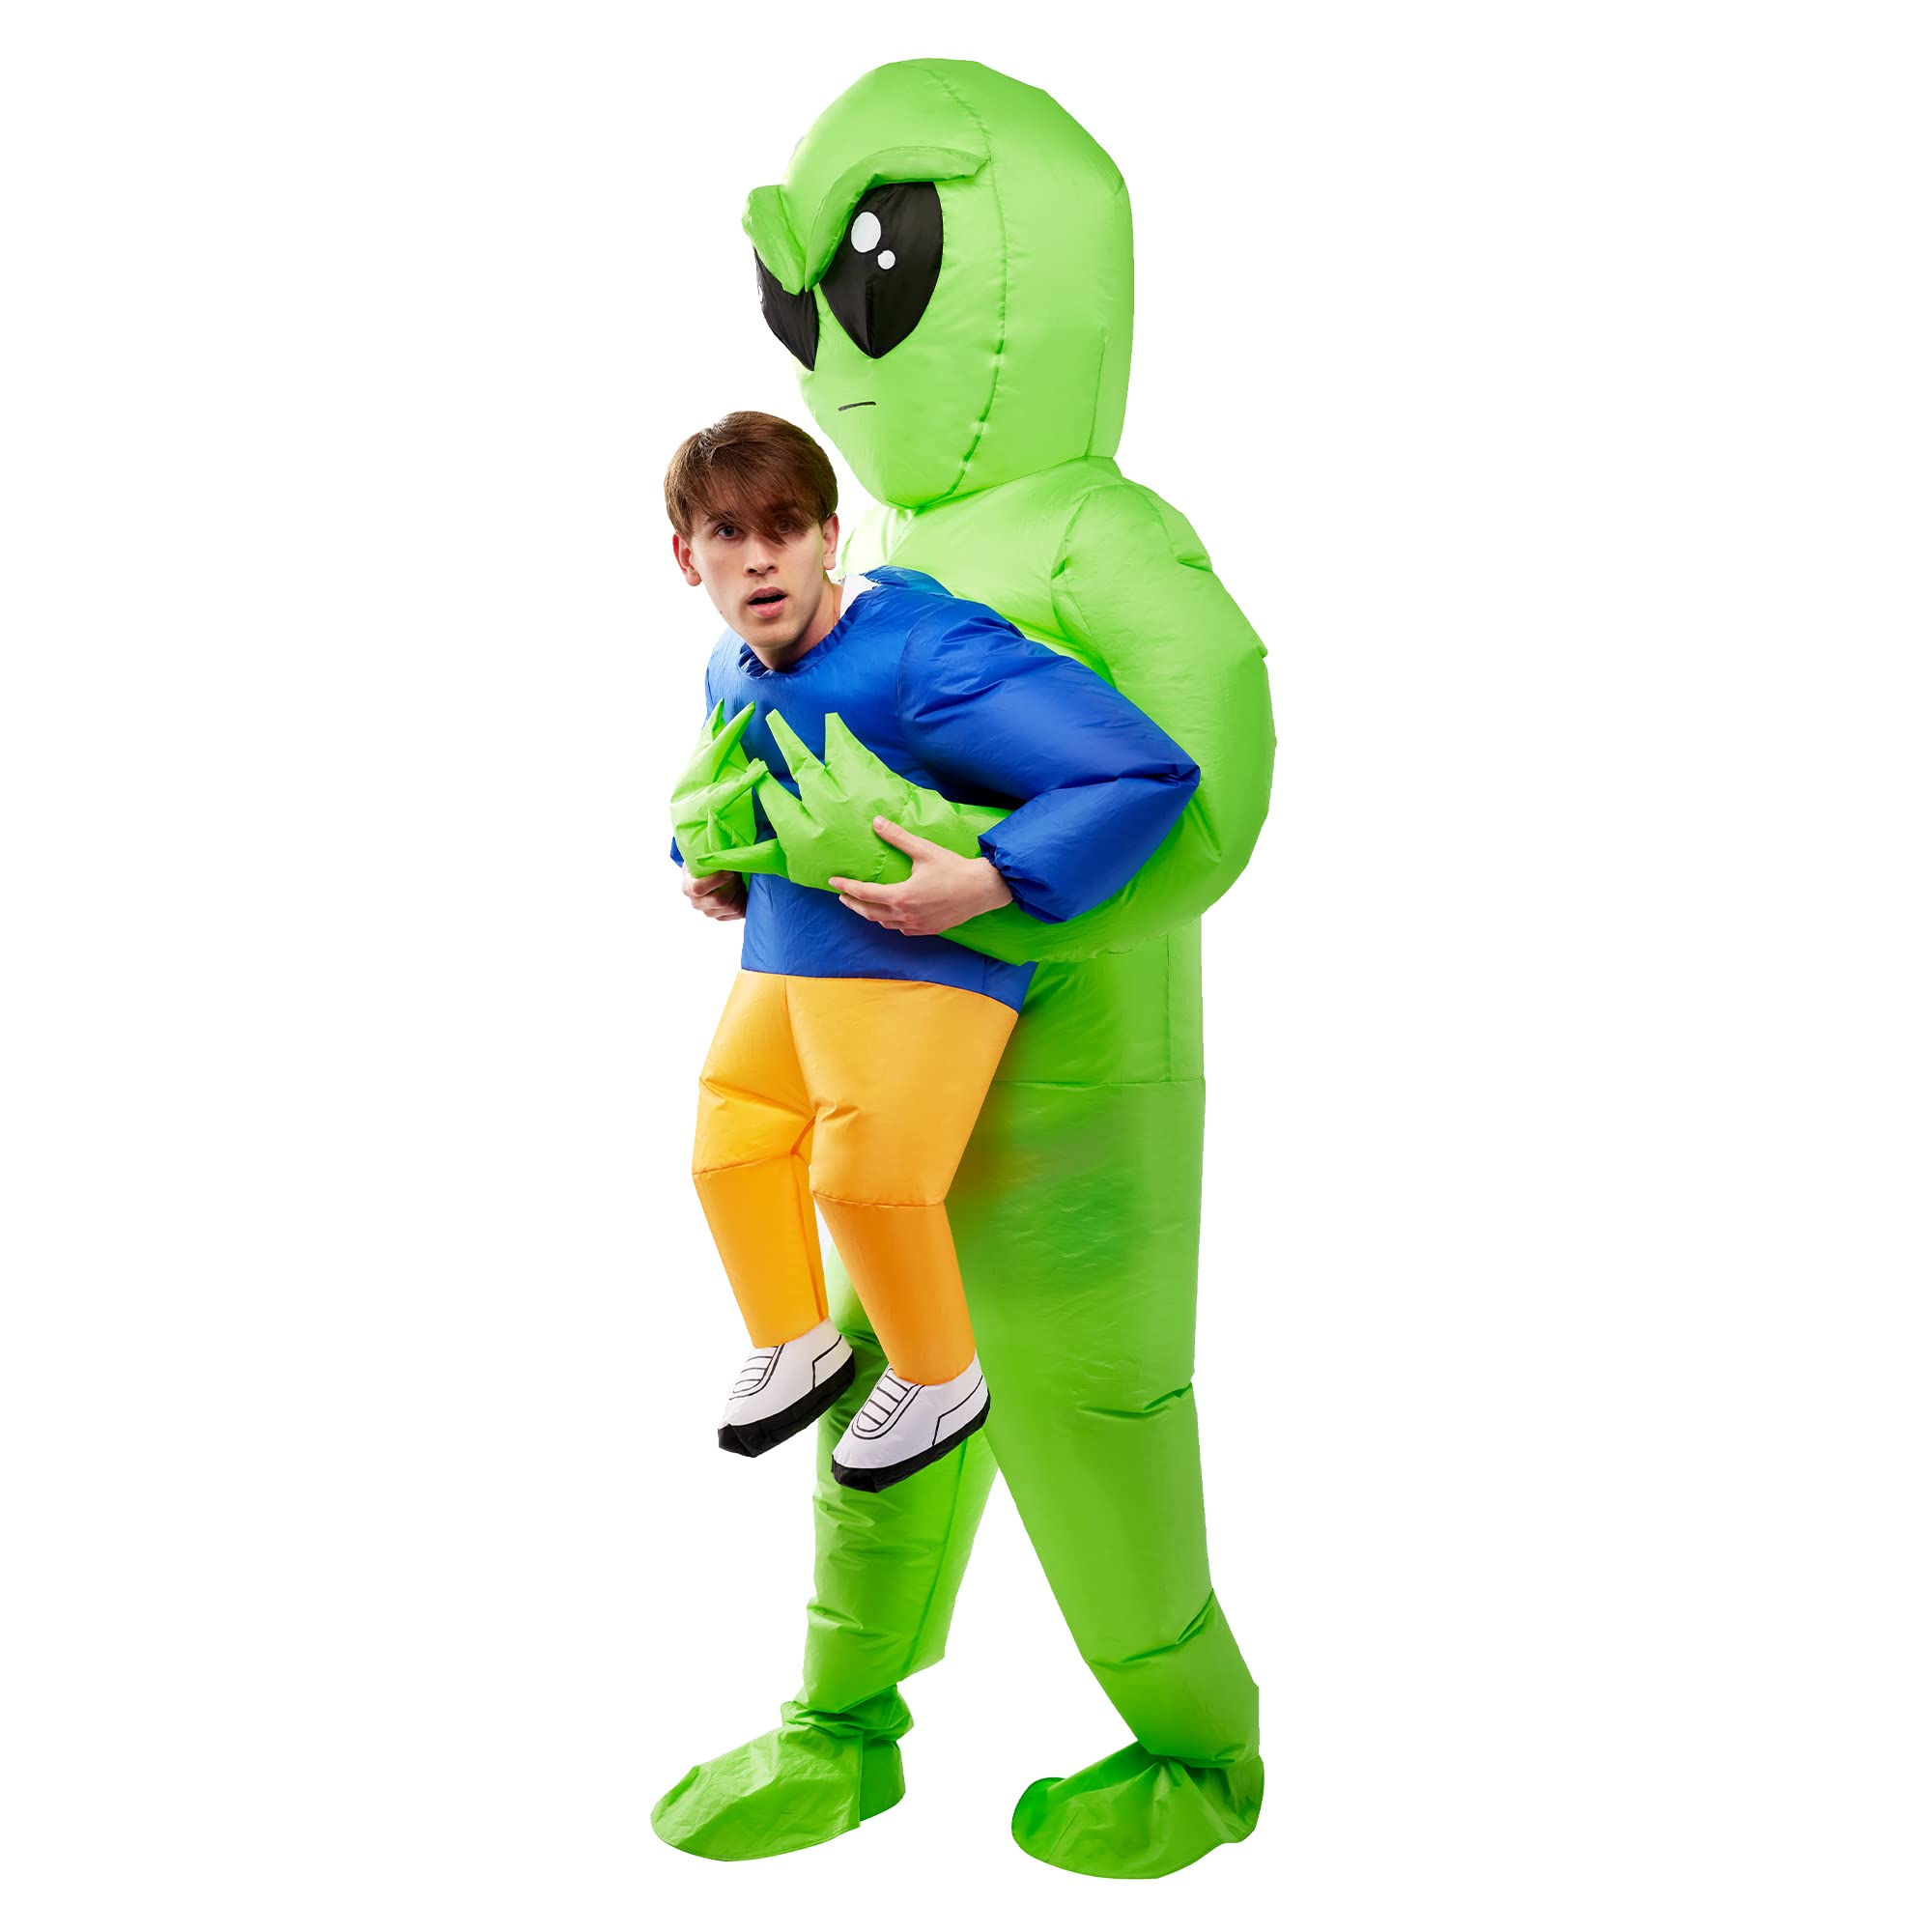 Adult alien abduction costume